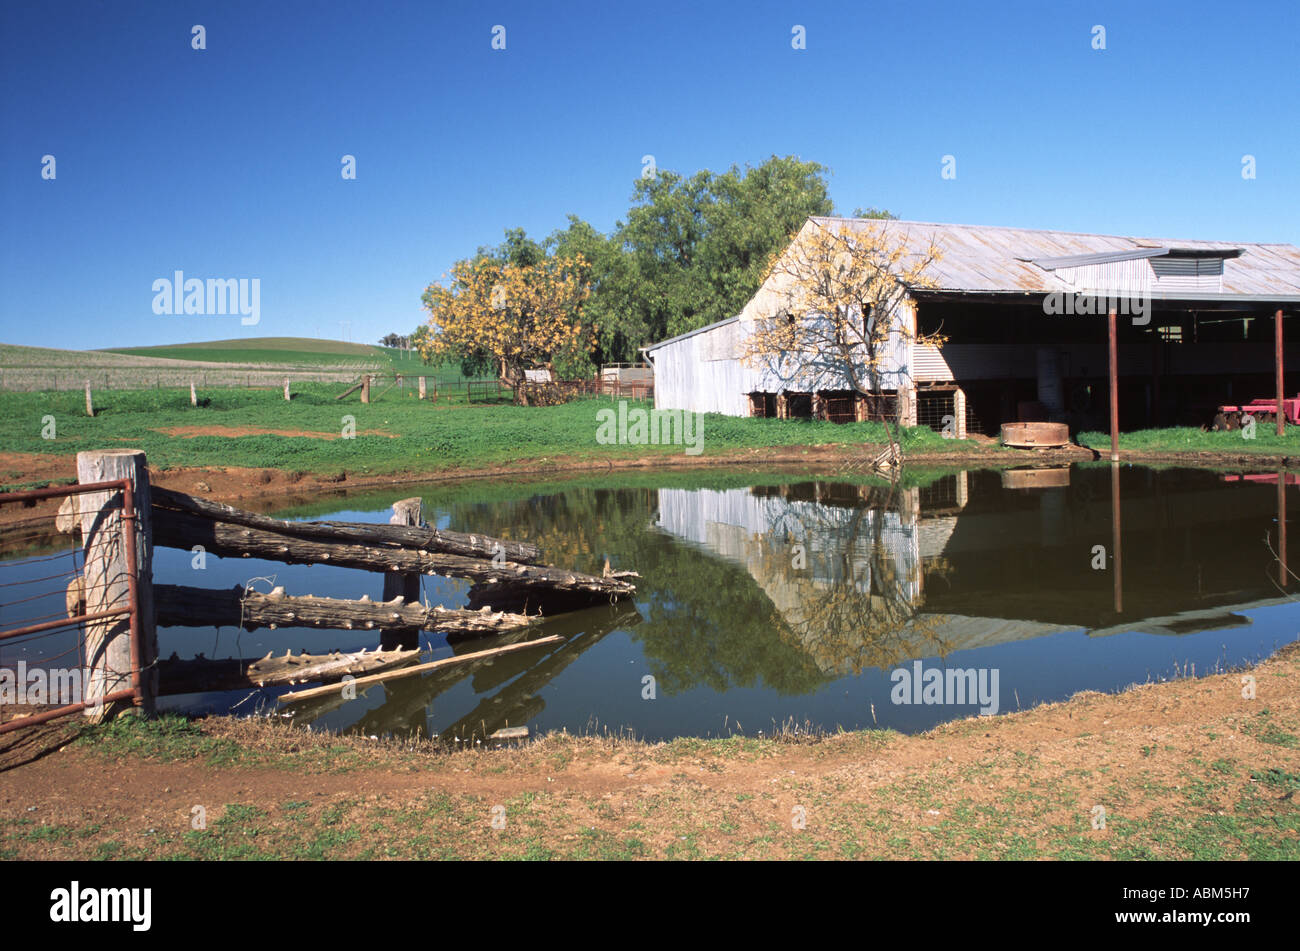 Kulturlandschaft mit Reflexionen in einer australischen Farm Damm Schaffung einer Szene von ländlicher Ruhe Stockfoto